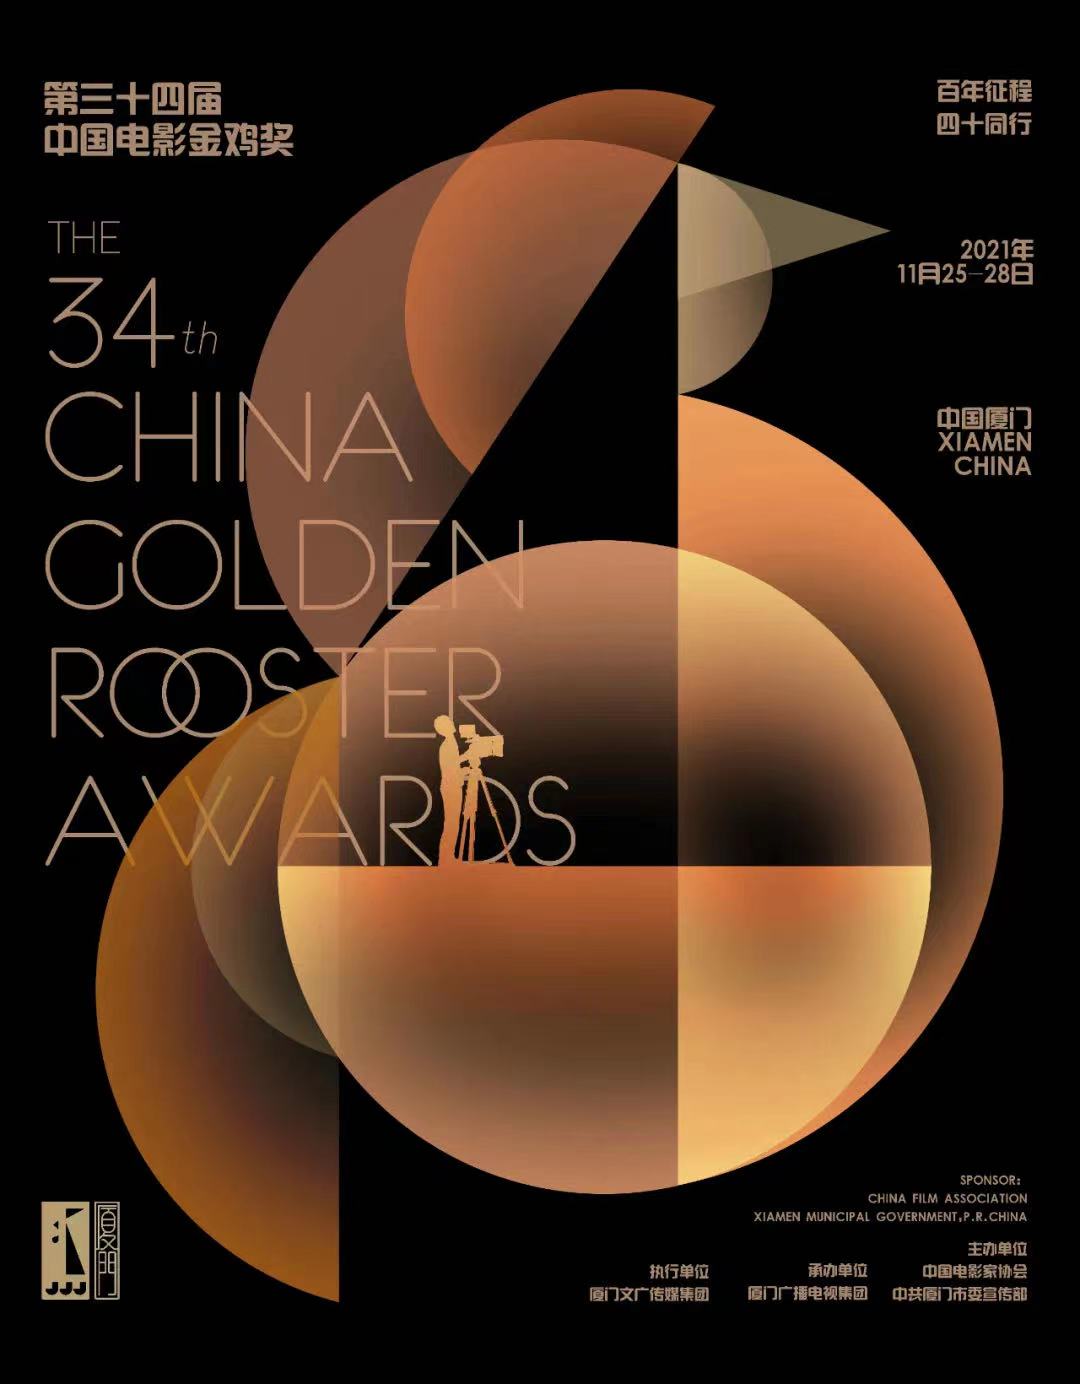 《雄雞凝視》等作品入圍第34屆中國電影金雞獎海報設計大賽-圖4